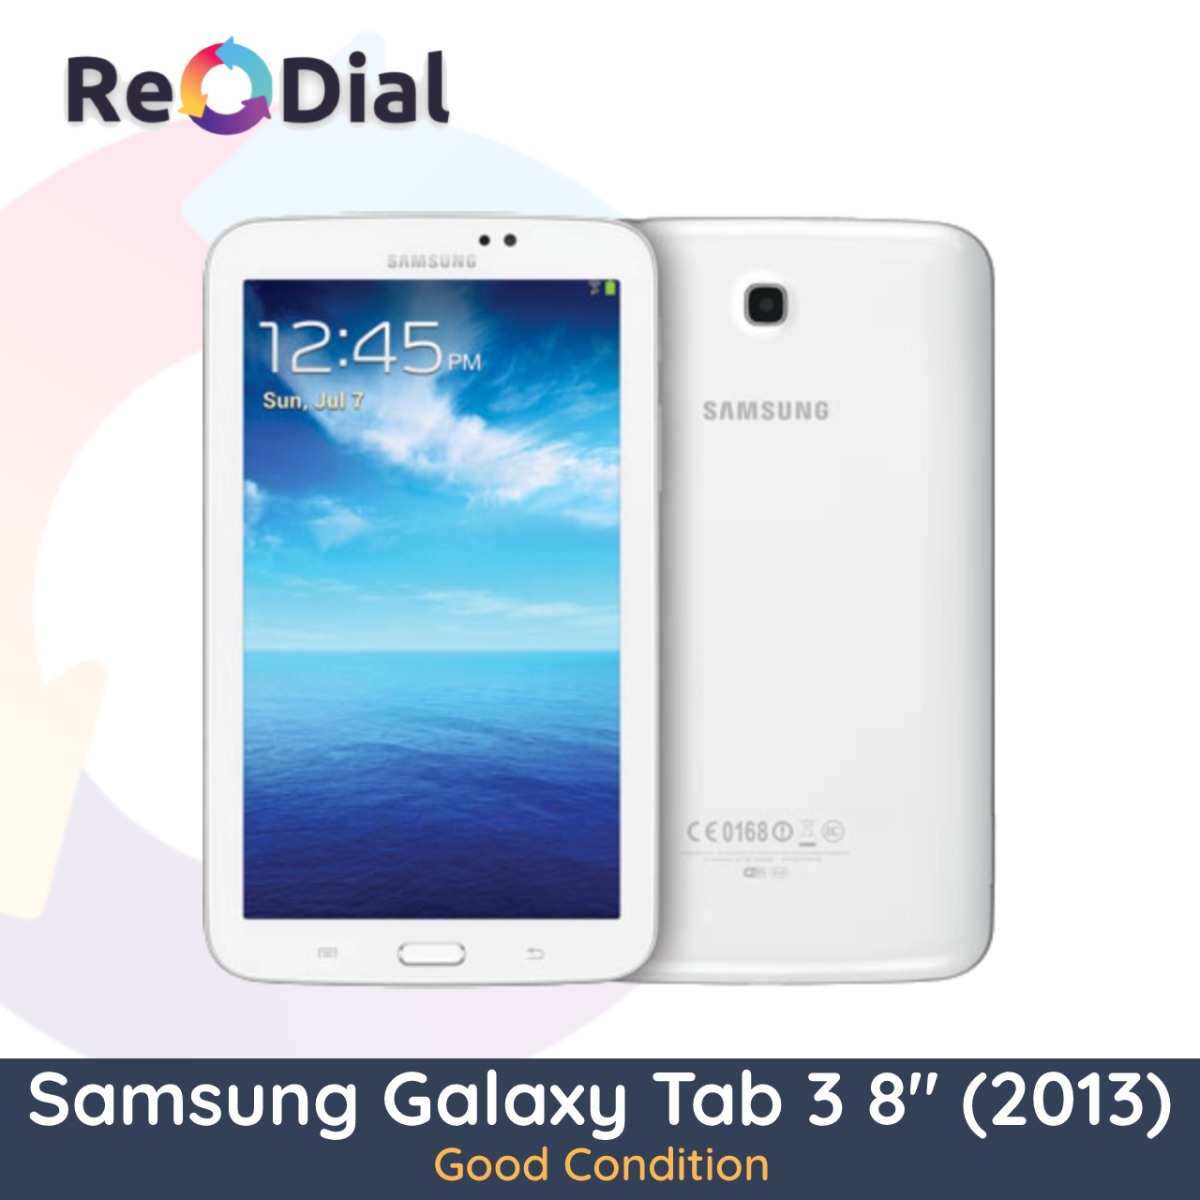 Samsung Galaxy Tab 3 8.0" (T310 / 2013) WiFi + Cellular - Good Condition